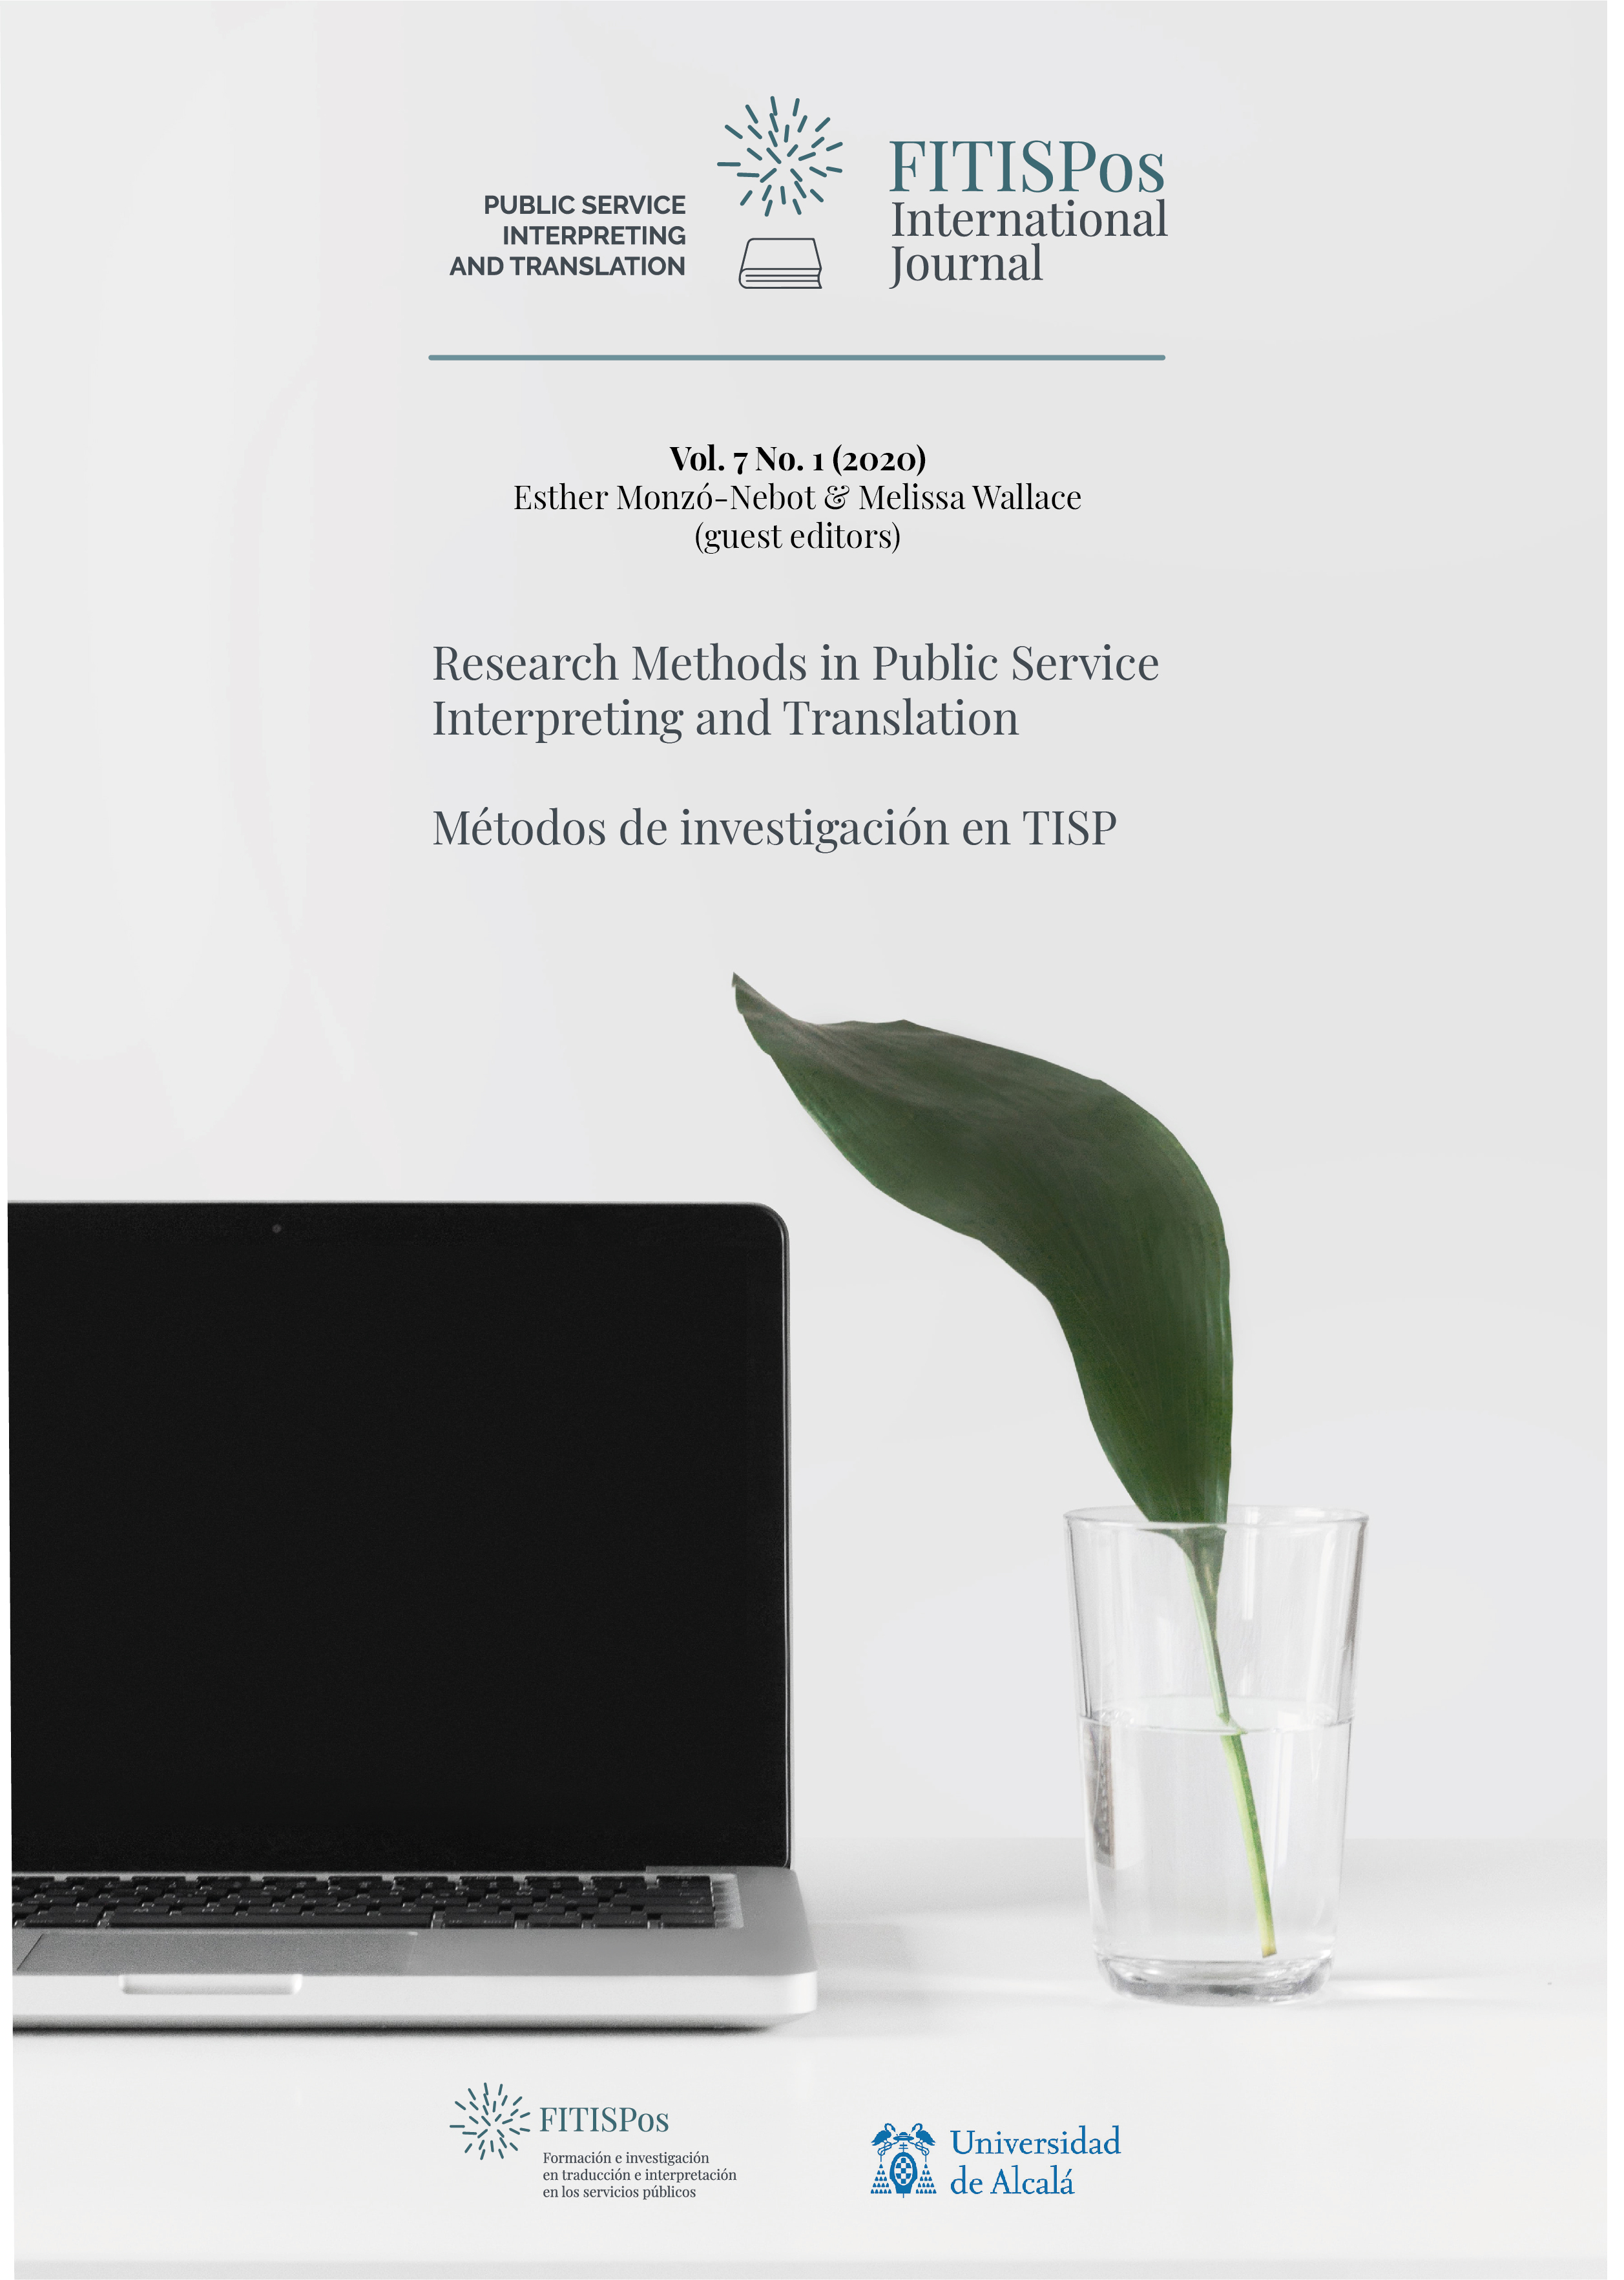 					View Vol. 7 No. 1 (2020): Research Methods in Public Service Interpreting and Translation/Métodos de investigación en TISP
				